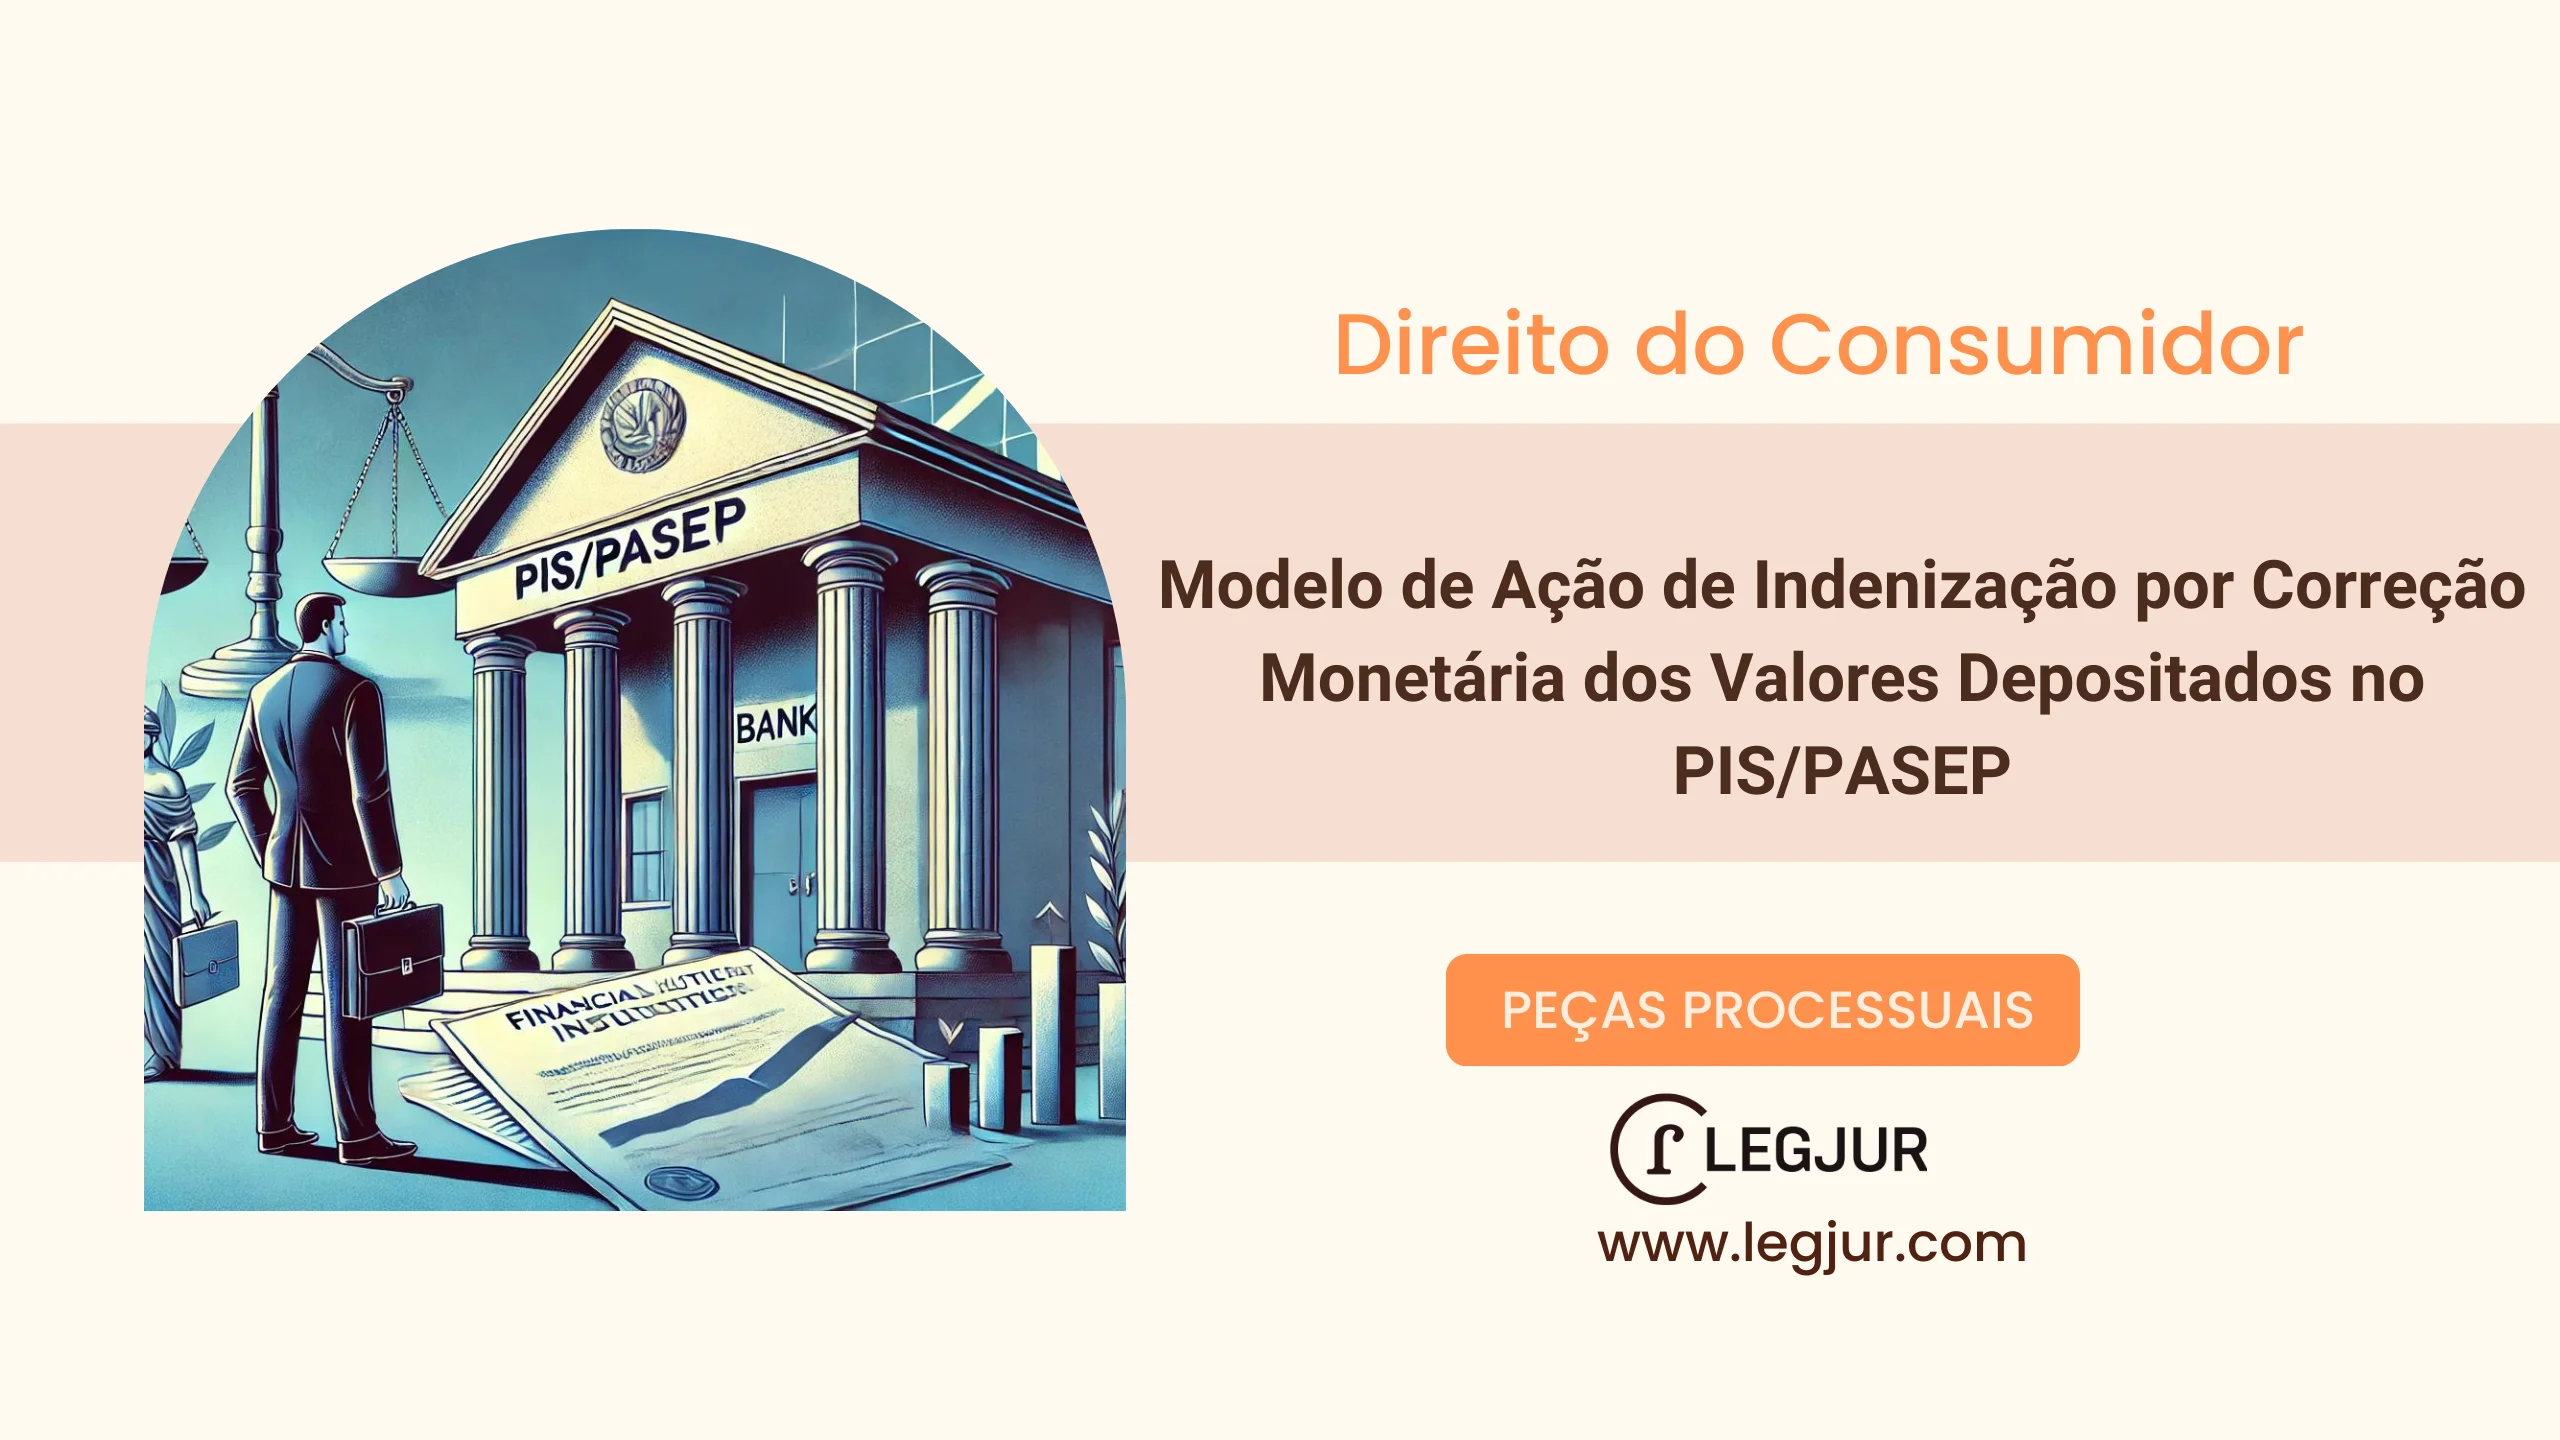 Modelo de Ação de Indenização por Correção Monetária dos Valores Depositados no PIS/PASEP